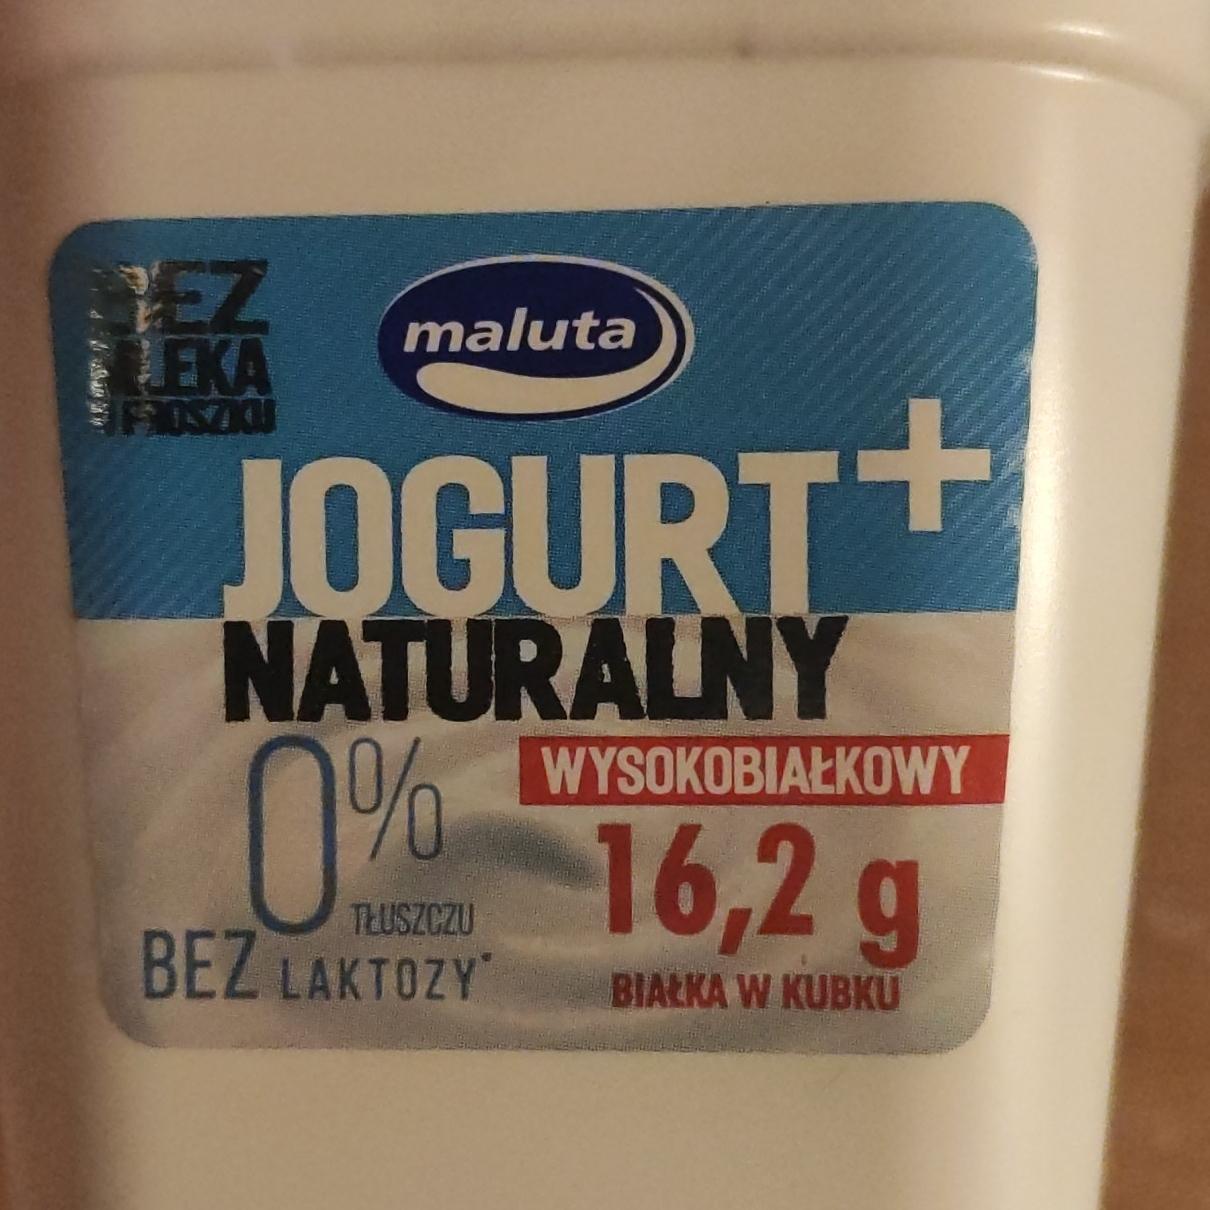 Фото - Йогурт натуральный 0% безлактозный Naturalny Jogurt Maluta